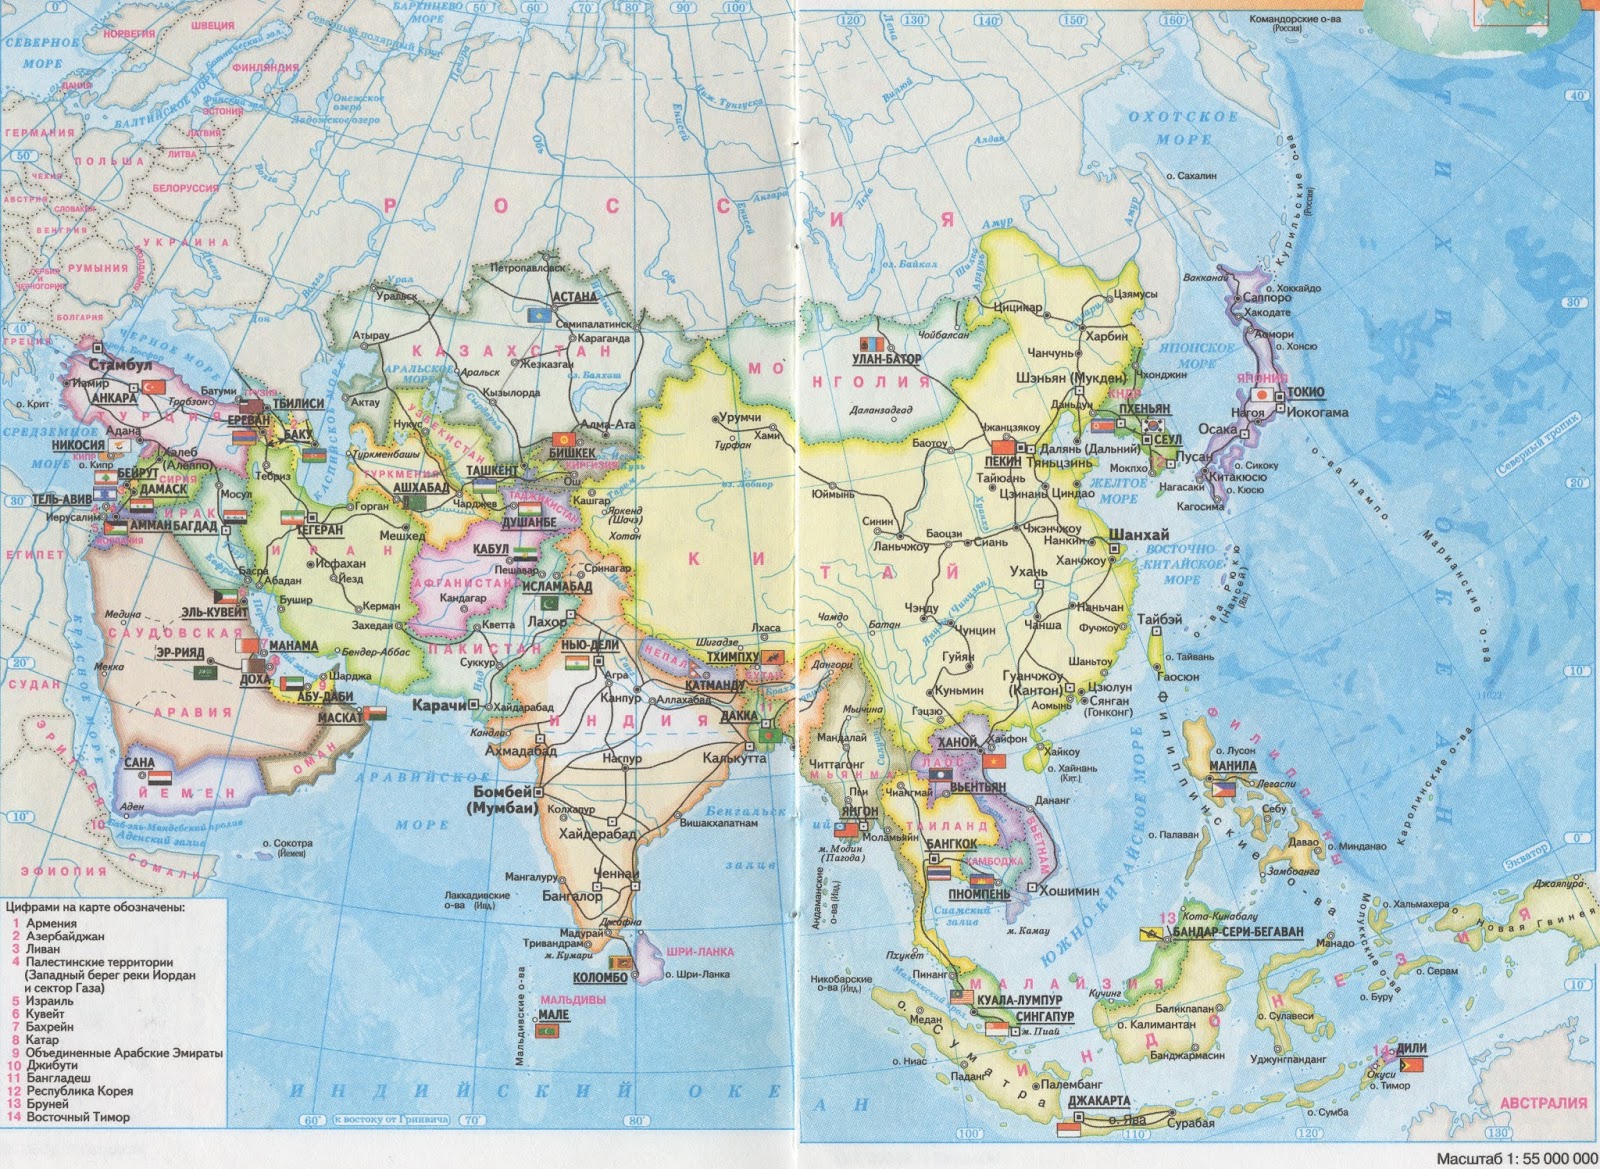 Государства зарубежной азии на карте. Страны зарубежной Азии на карте. Карта зарубежной Азии со странами и столицами. Карта зарубежной Азия политичпска карта. Карта зарубежной Азии политическая карта.